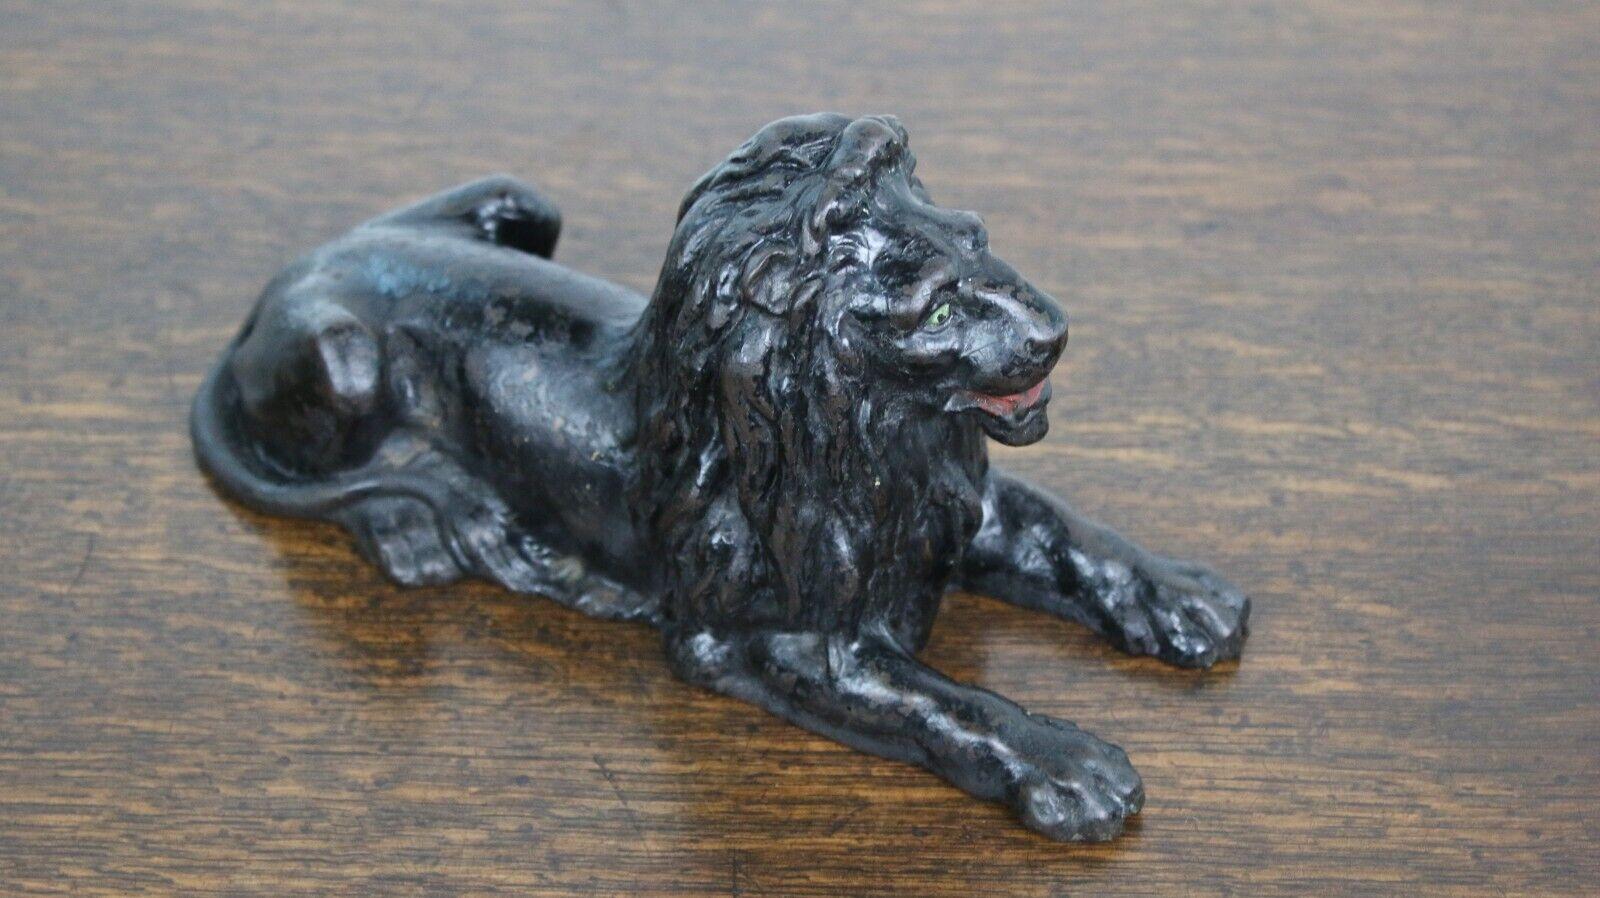 Cast Lion

Un fabuleux lion noir du 19e siècle.

Un lion couché en fonte qui convient pour le bureau ou comme élément d'une bibliothèque.

Cachet de coulée en dessous.

Condit :

Dans l'état d'origine de l'antiquité.